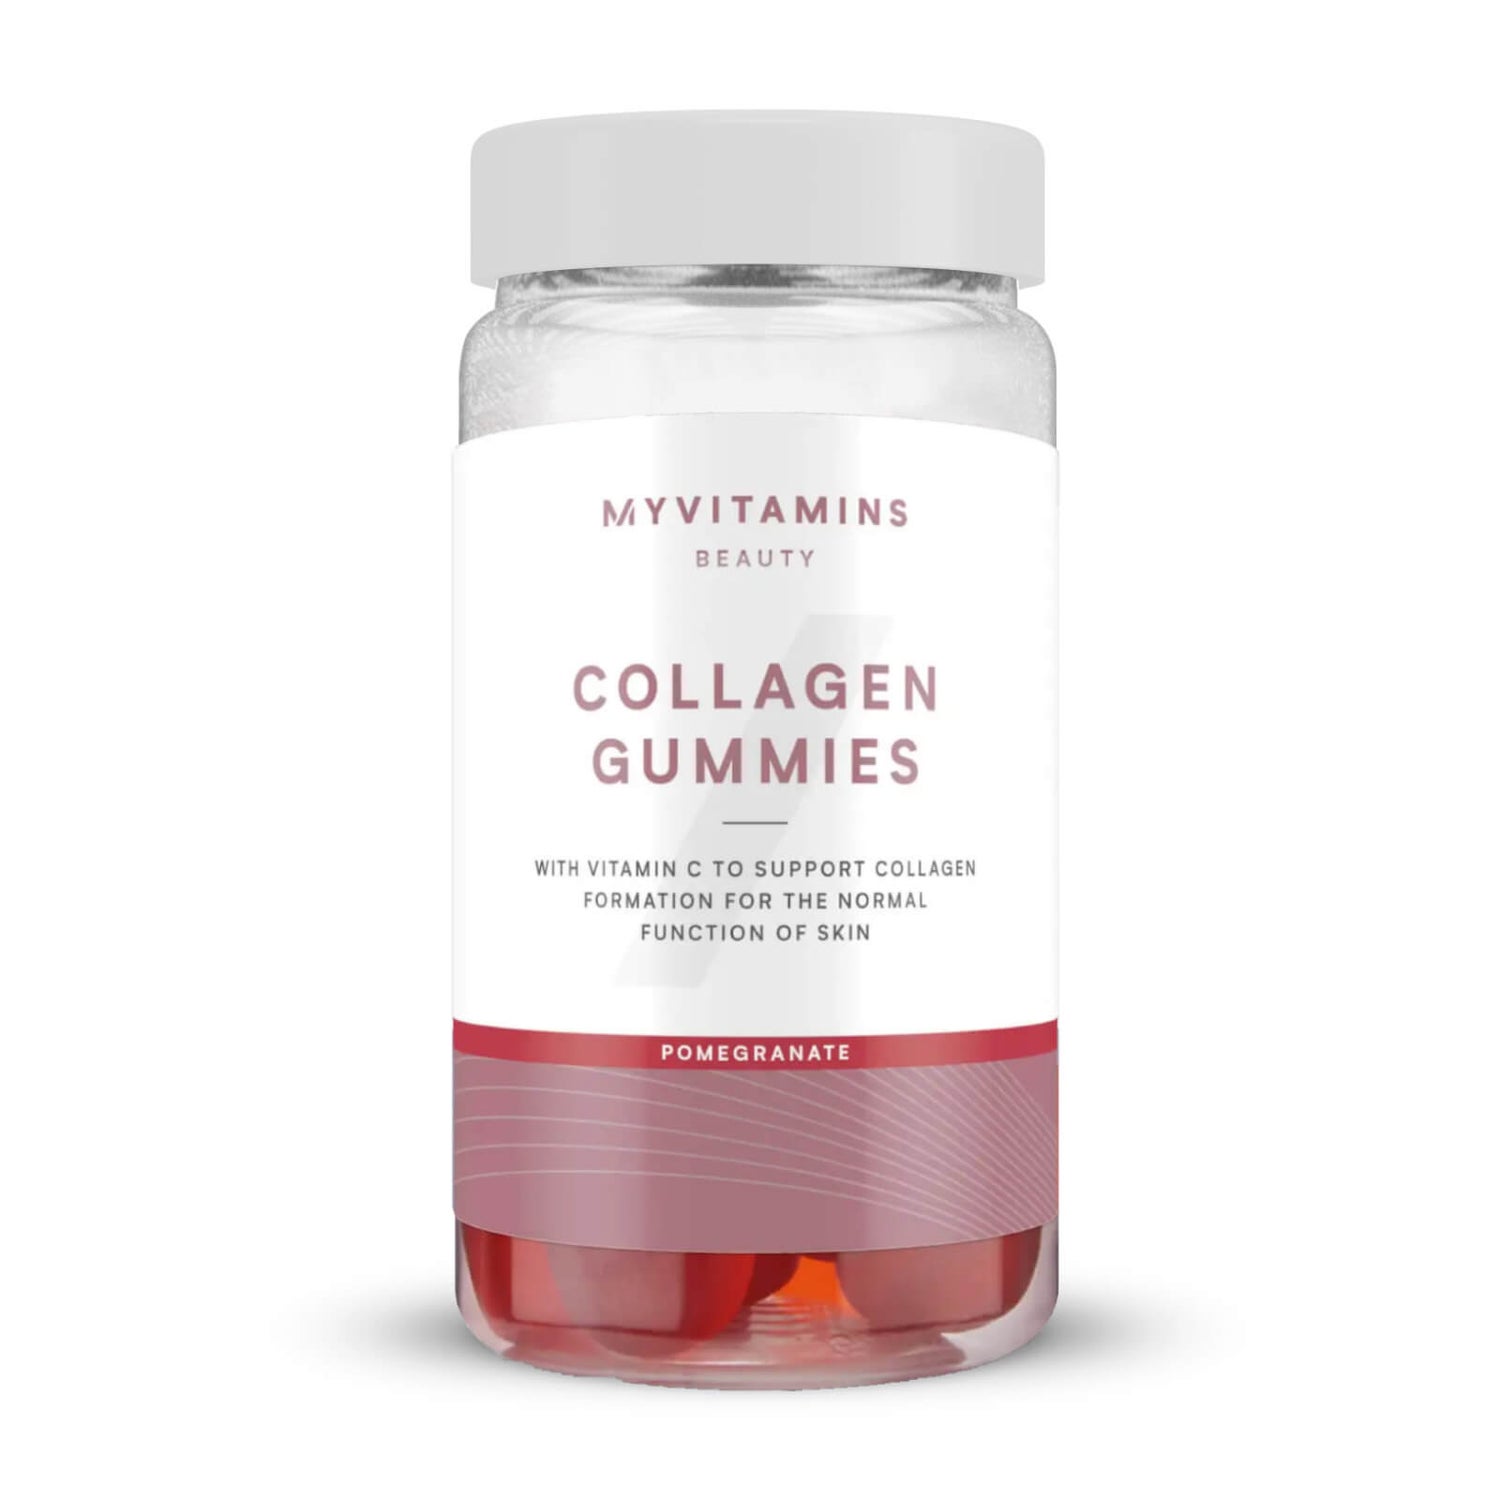 Myvitamins Collagen Gummies